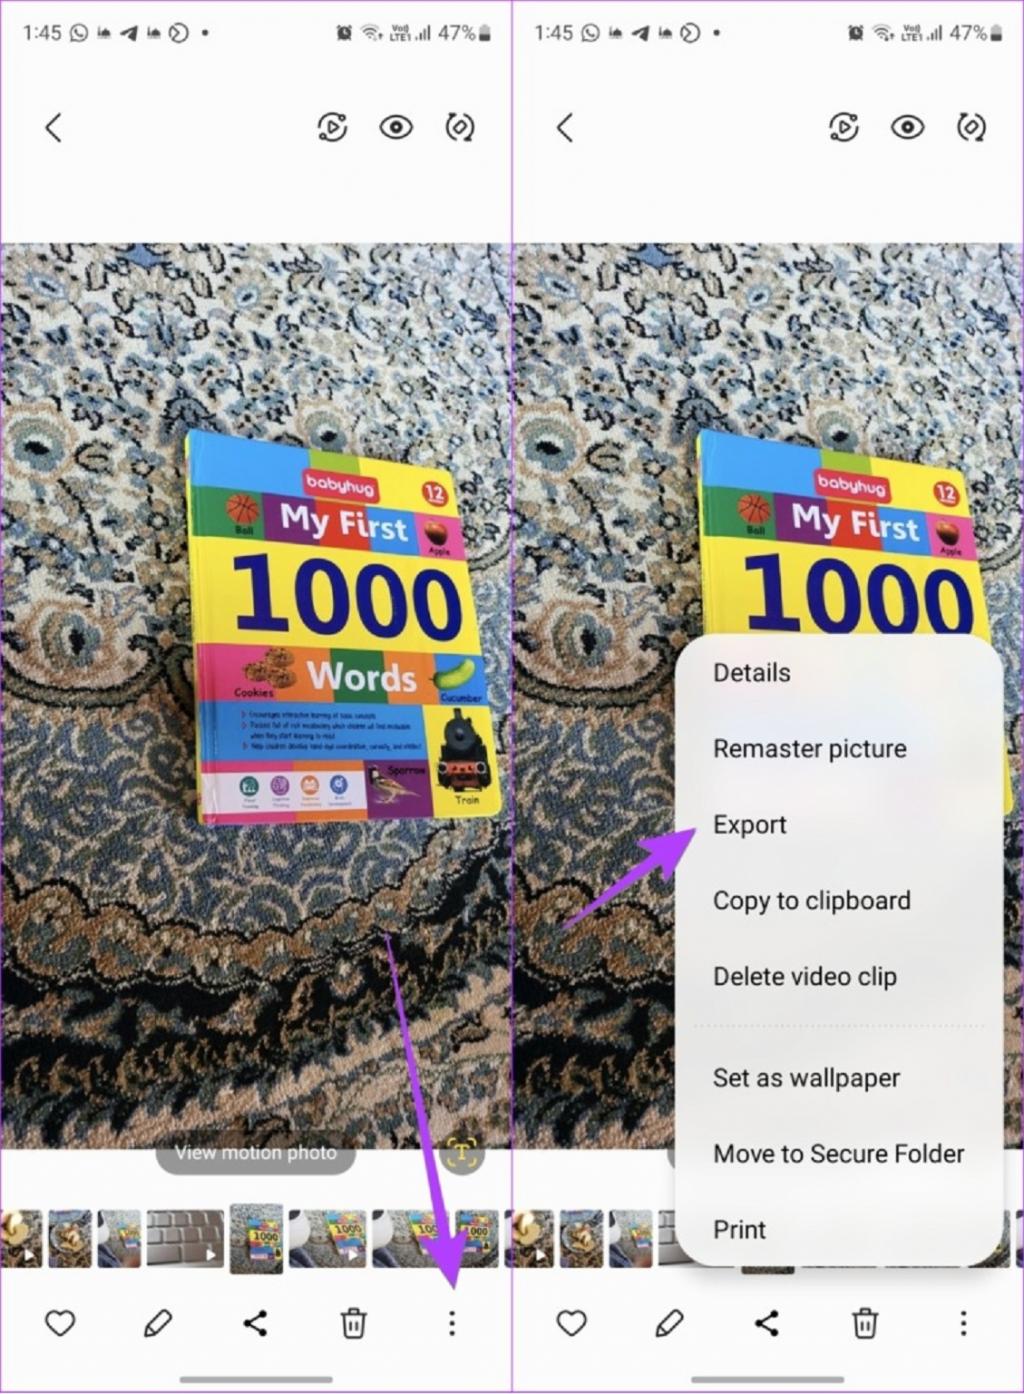 نحوه ذخیره عکس متحرک به عنوان یک ویدیو یا GIF در گوشی سامسونگ